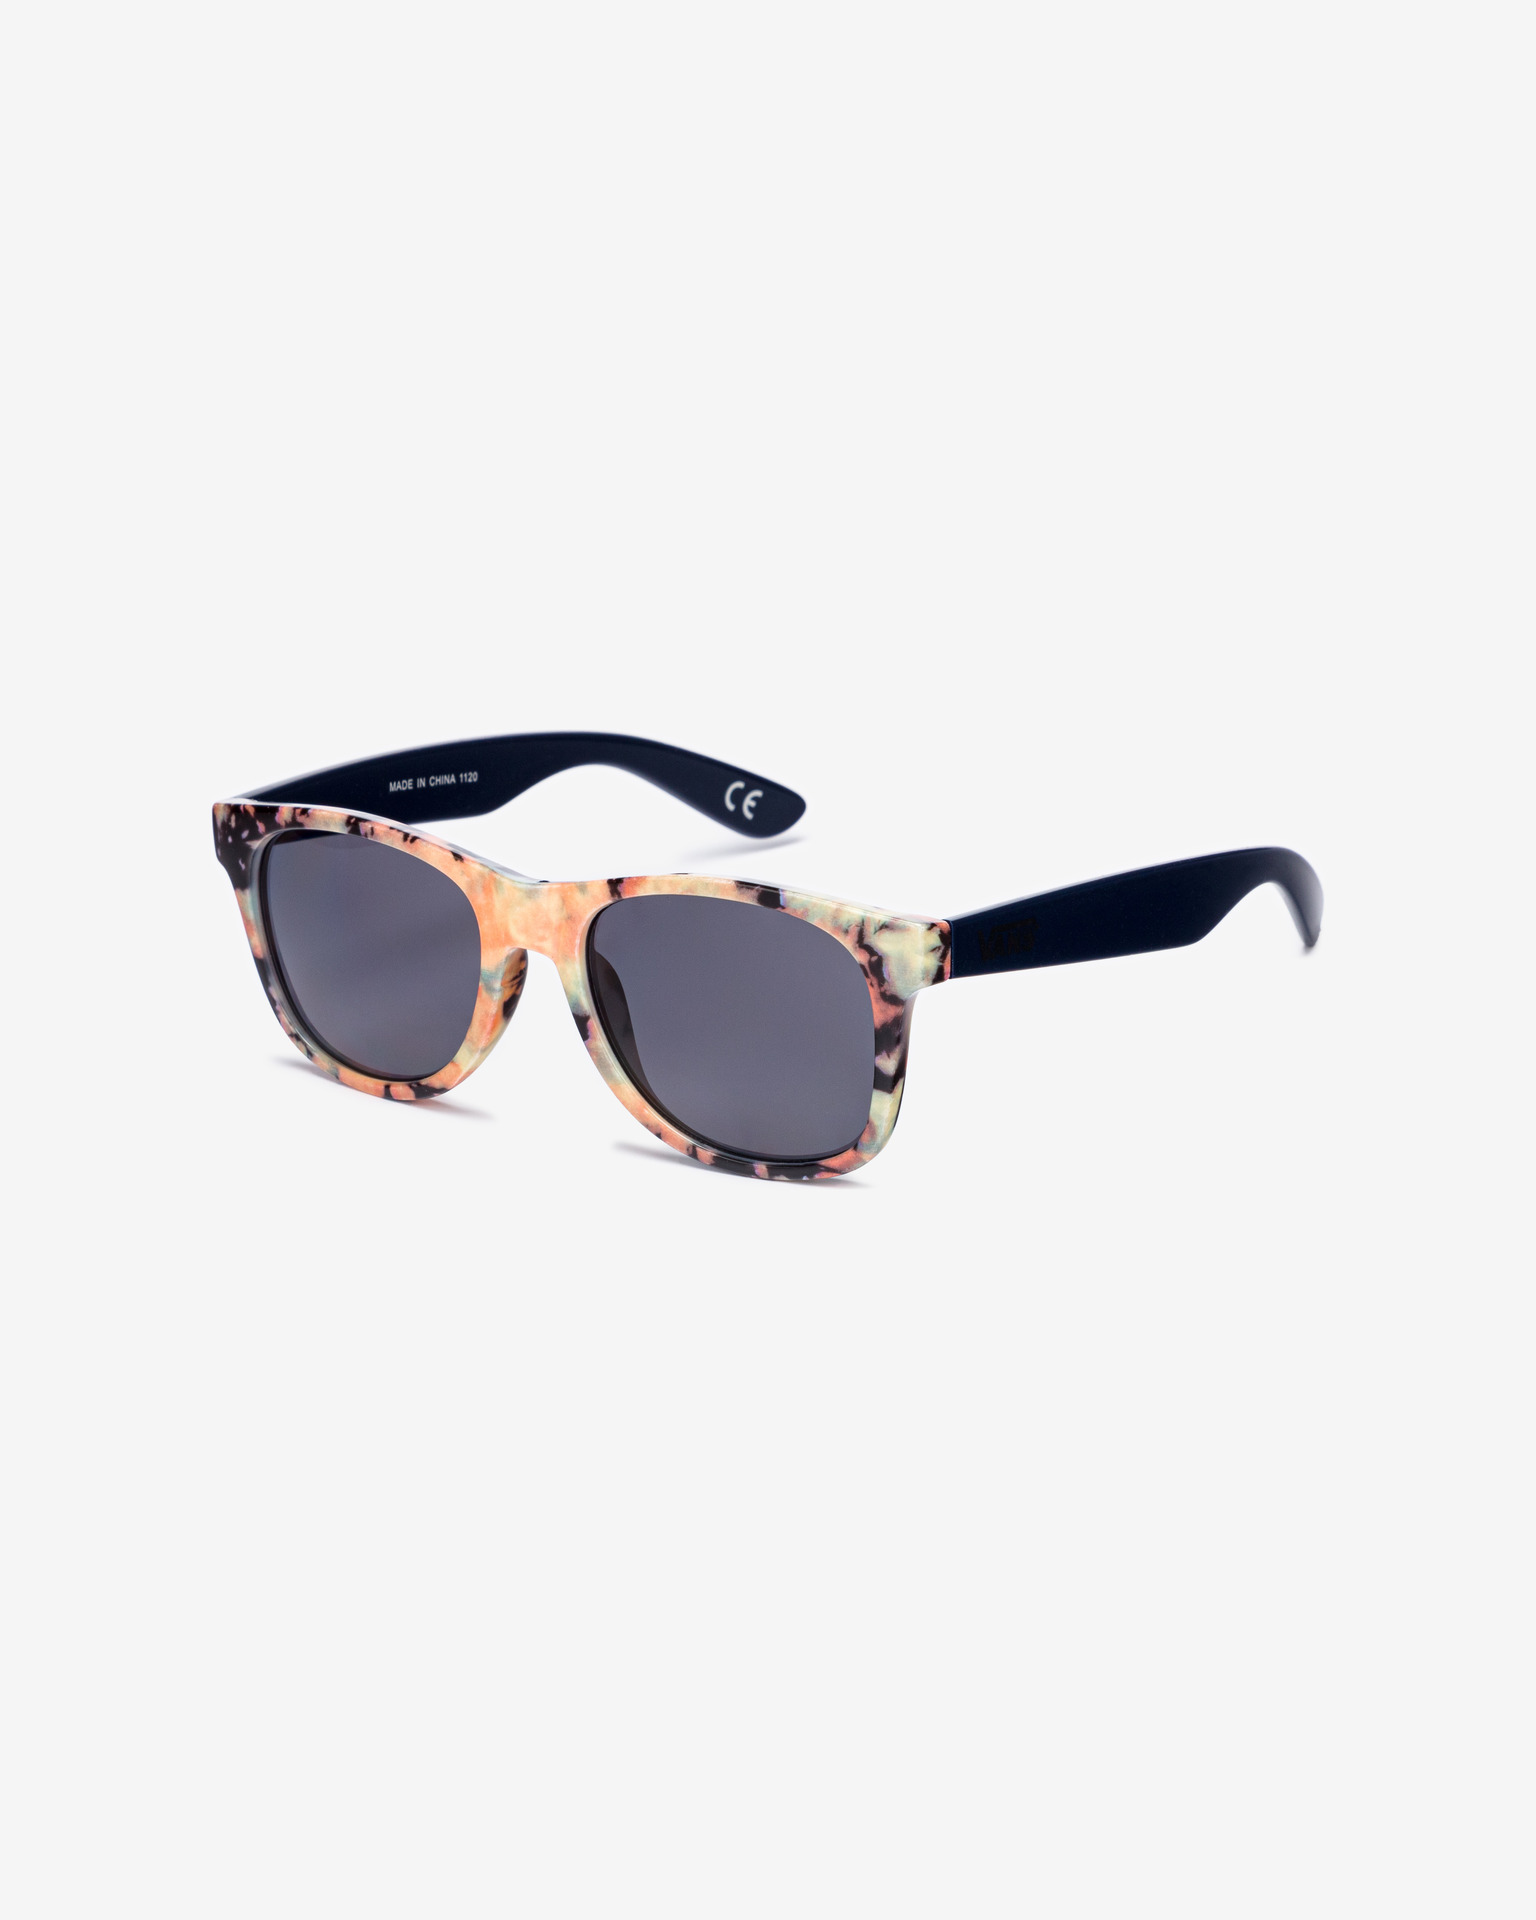 Vans - Shades Spicoli Sunglasses 4